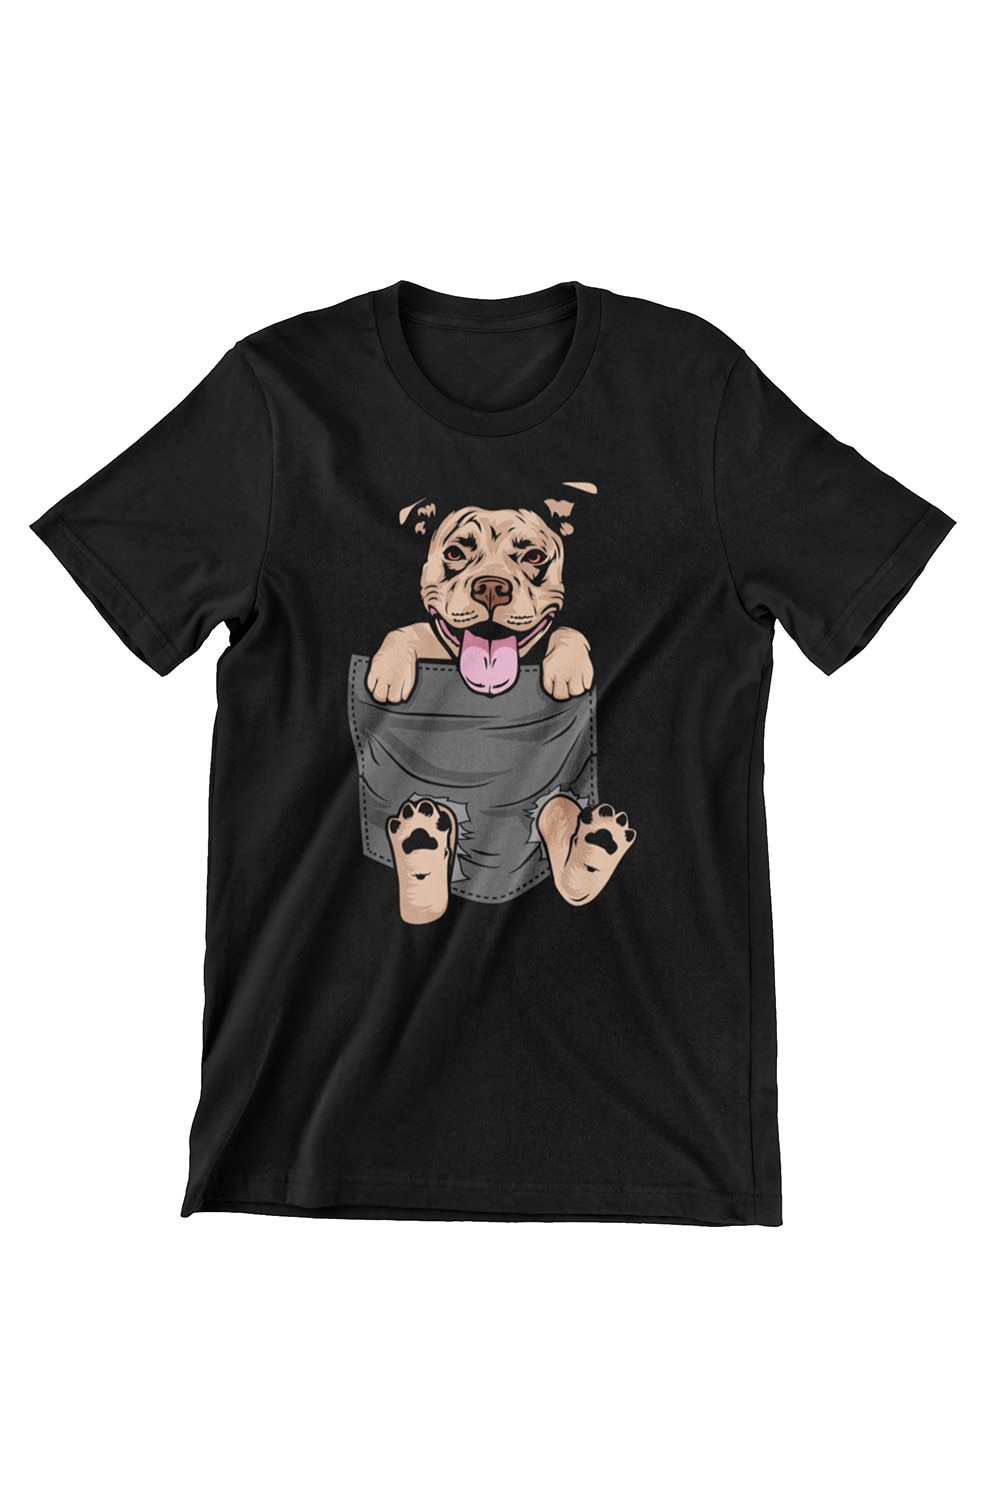 Női kutyák póló, Pitbull zsebben, fekete, XS - eMAG.hu